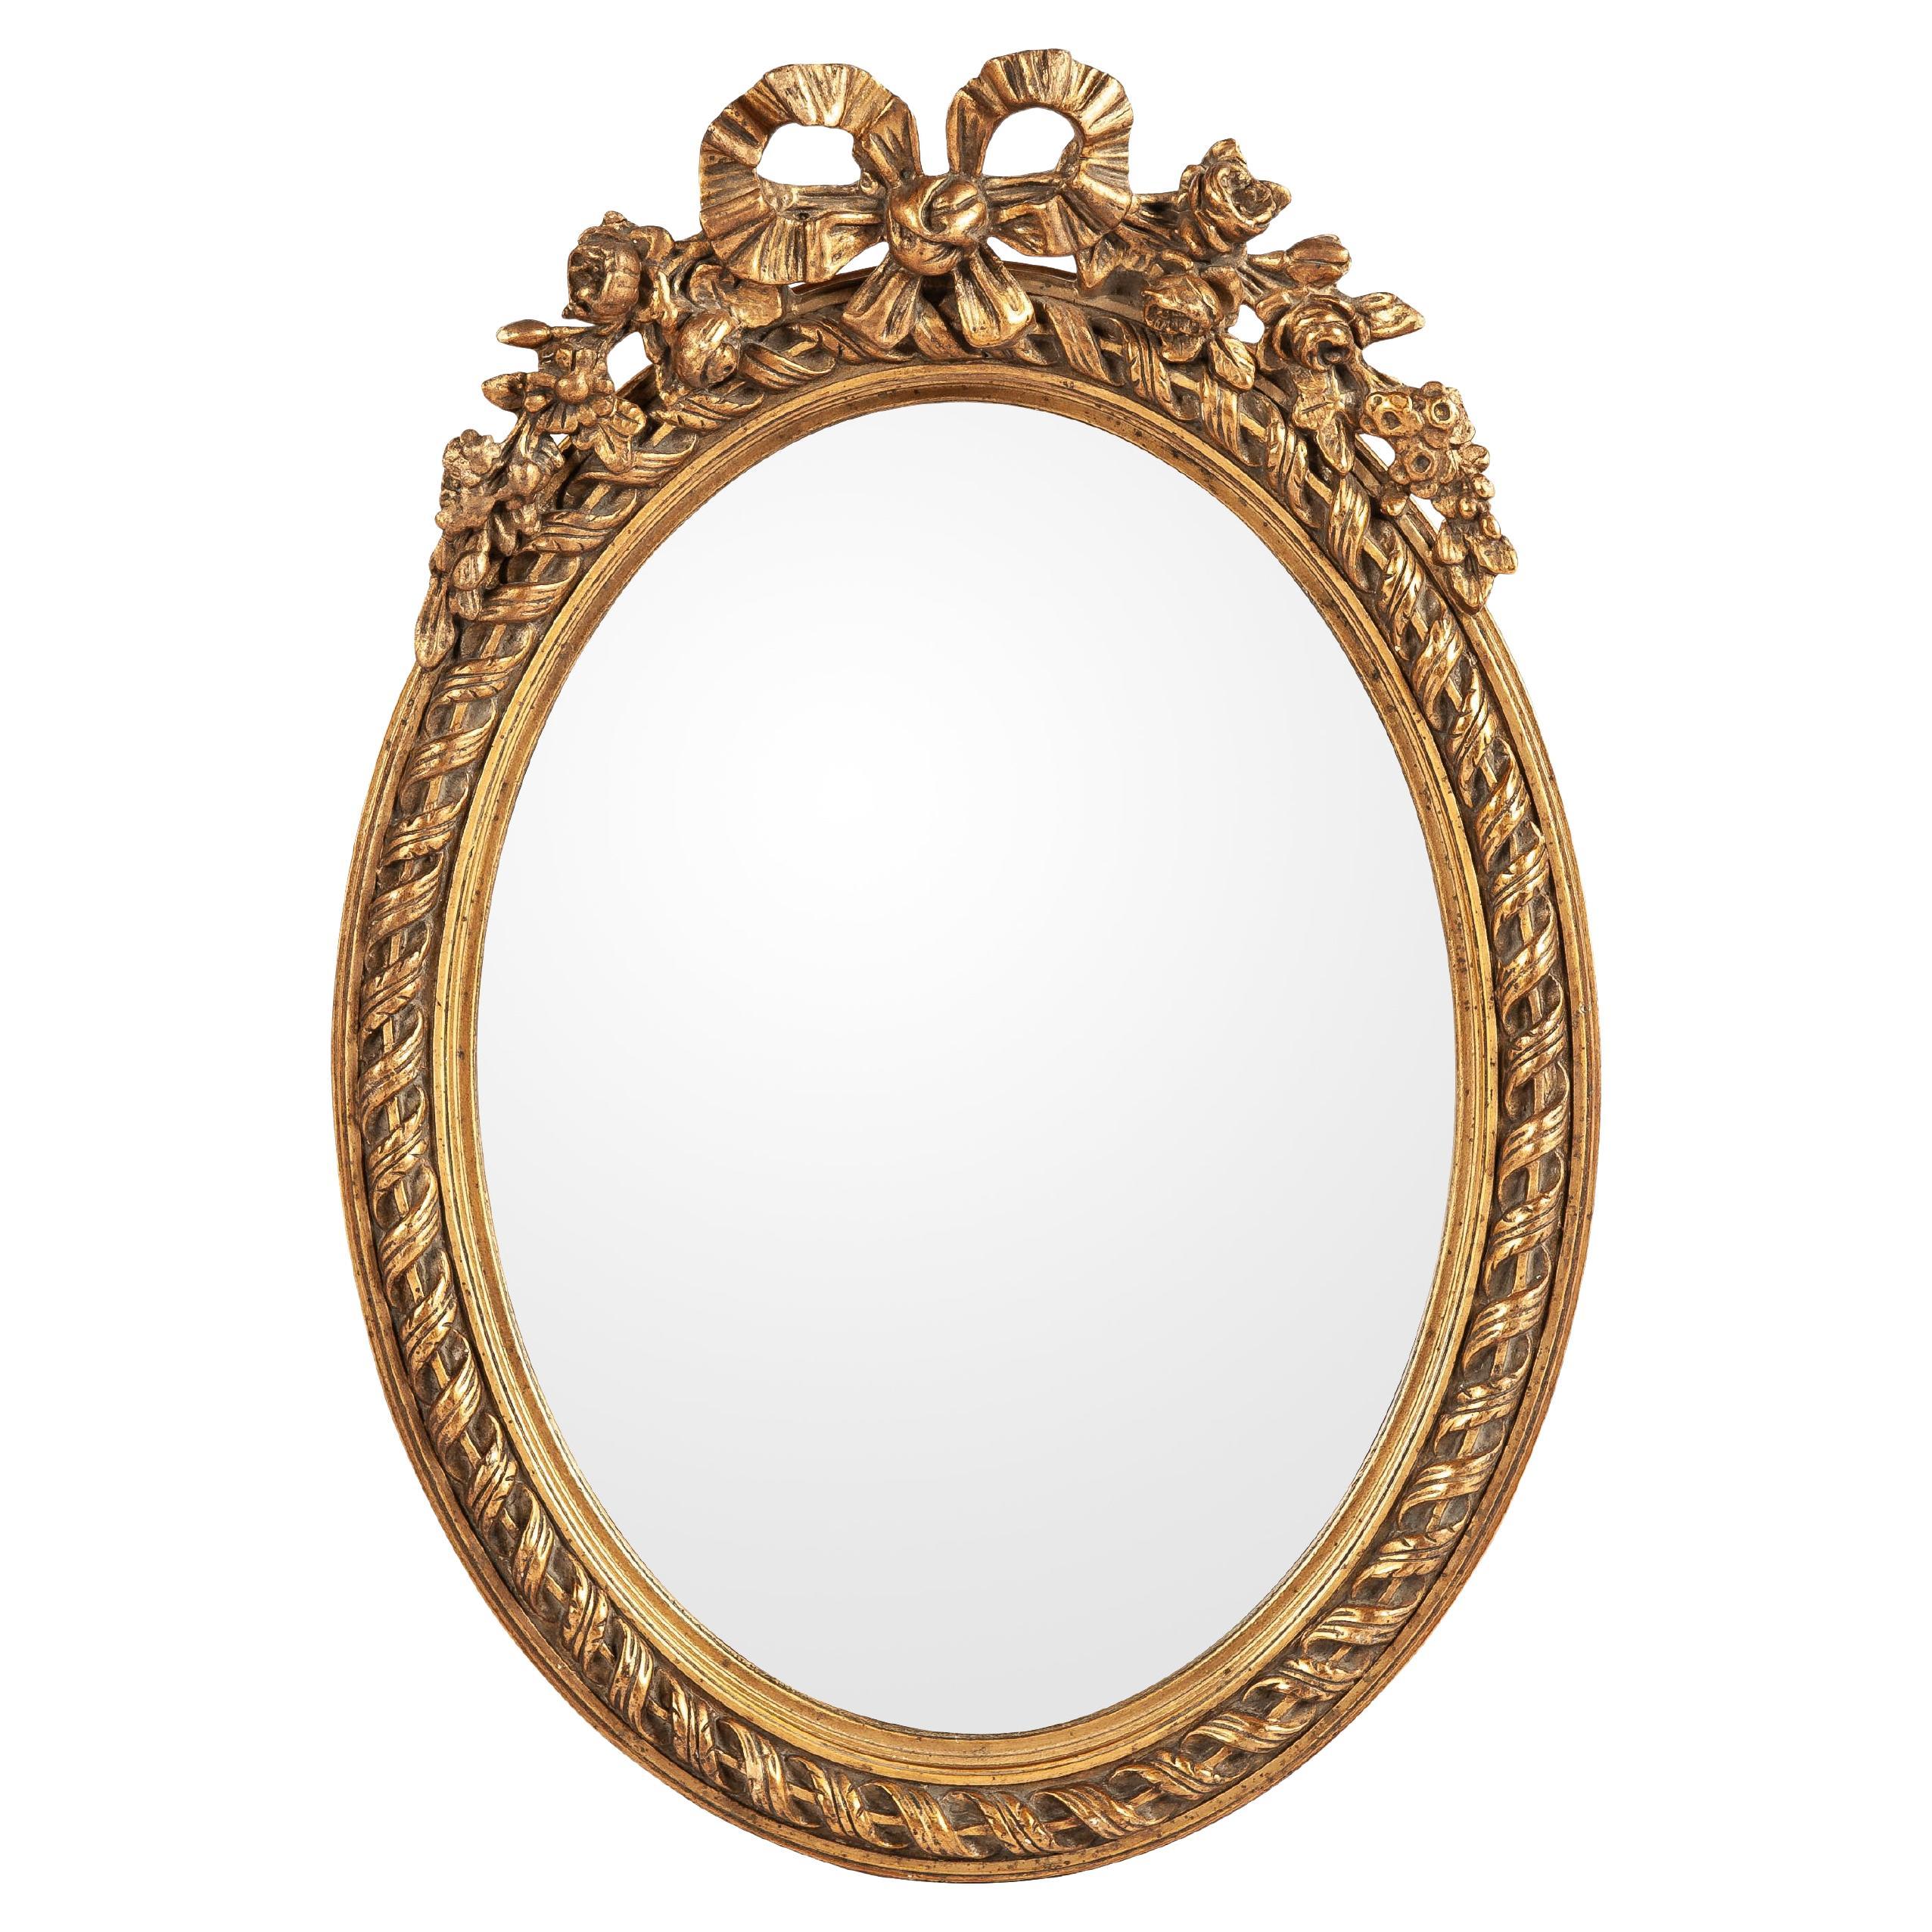 Antique début 20ème siècle petit miroir ovale français doré à la feuille d'or et à la peinture 